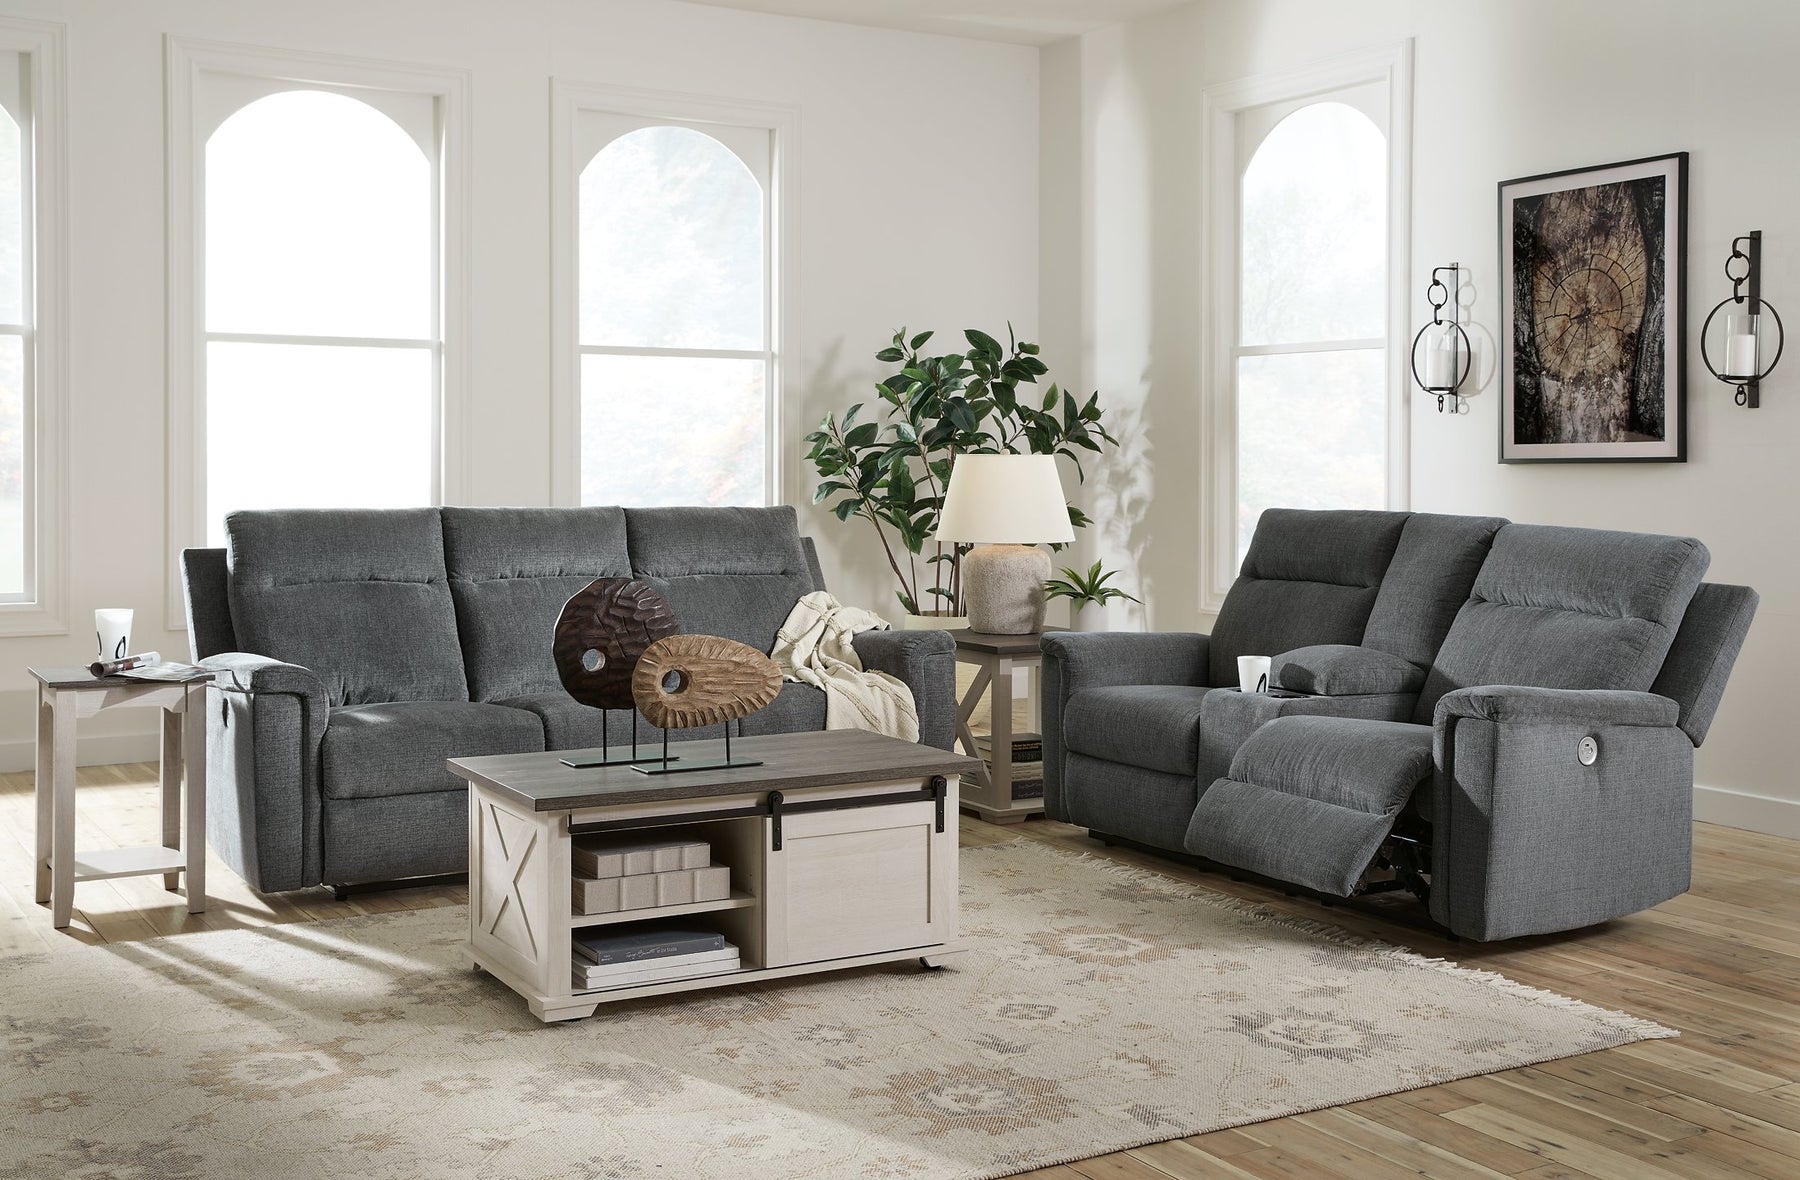 Barnsana Living Room Set - Half Price Furniture